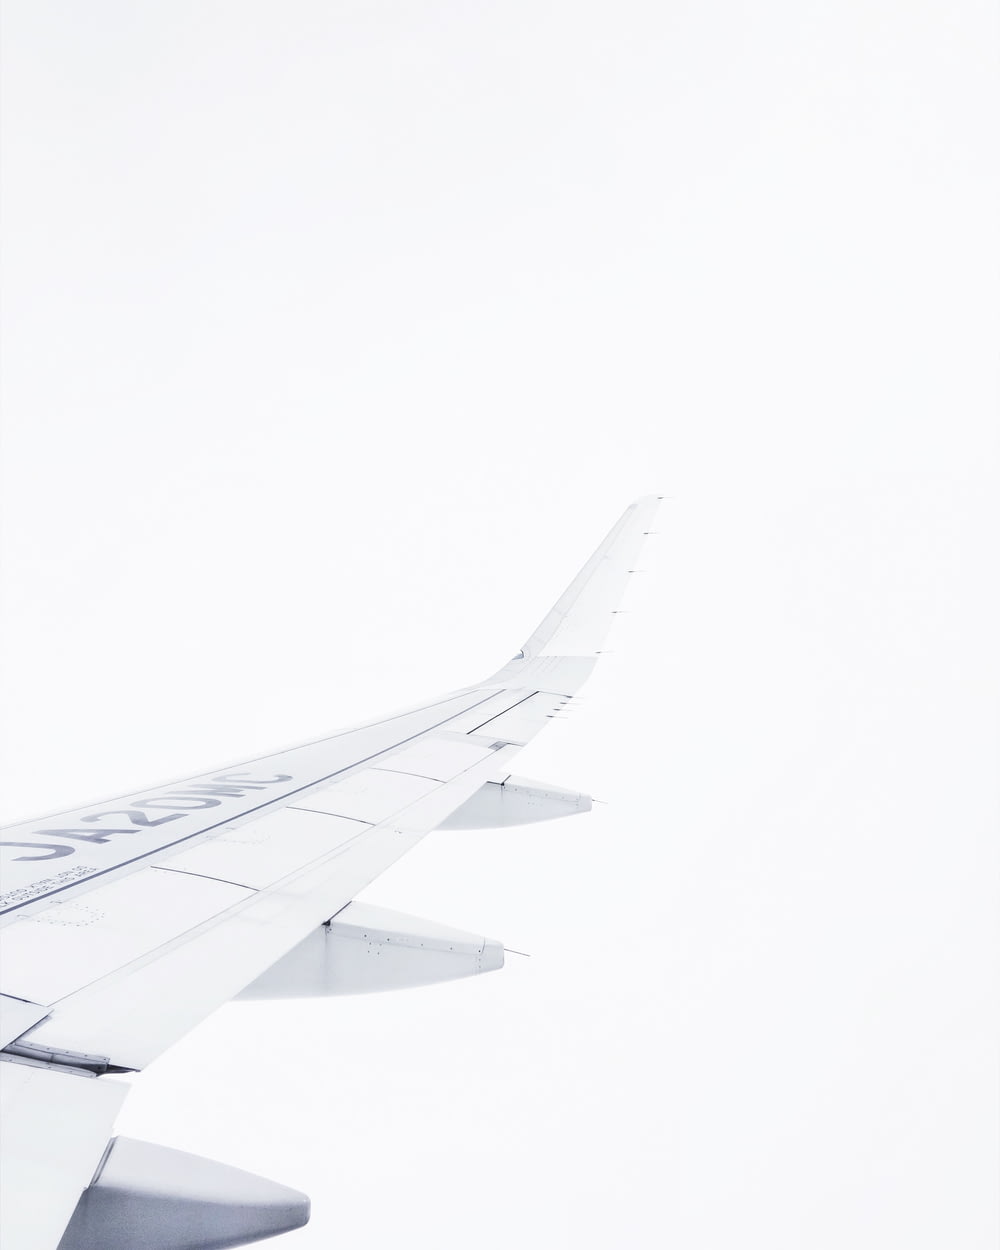 aeroplano bianco in aria